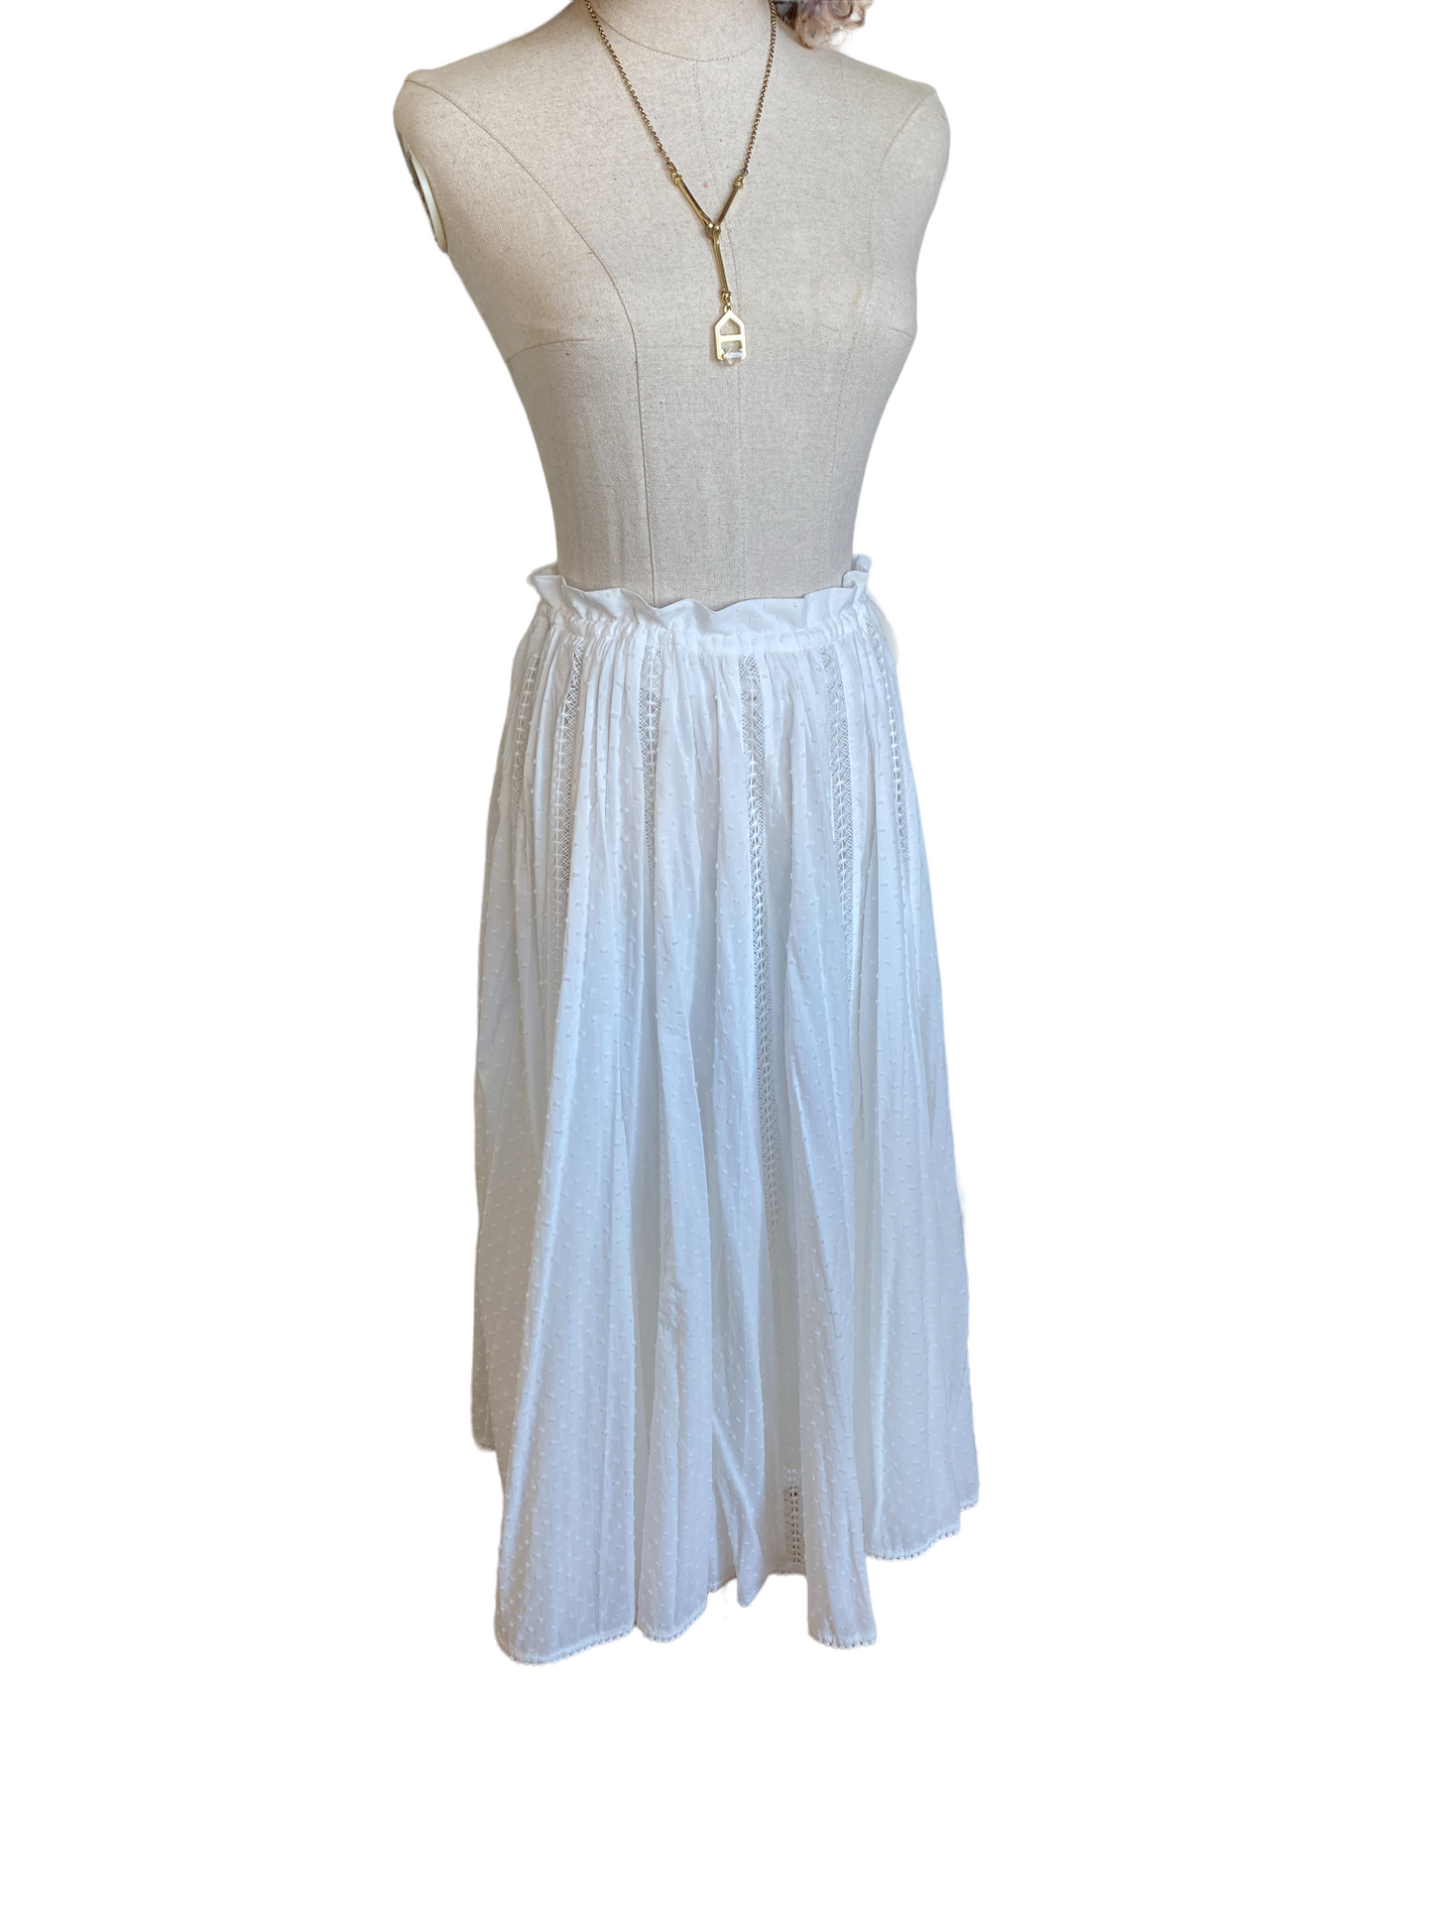 Zimmermann Suraya Lace Insert Skirt | Midi, Fringe, Cotton, White, Dots $600 RRP